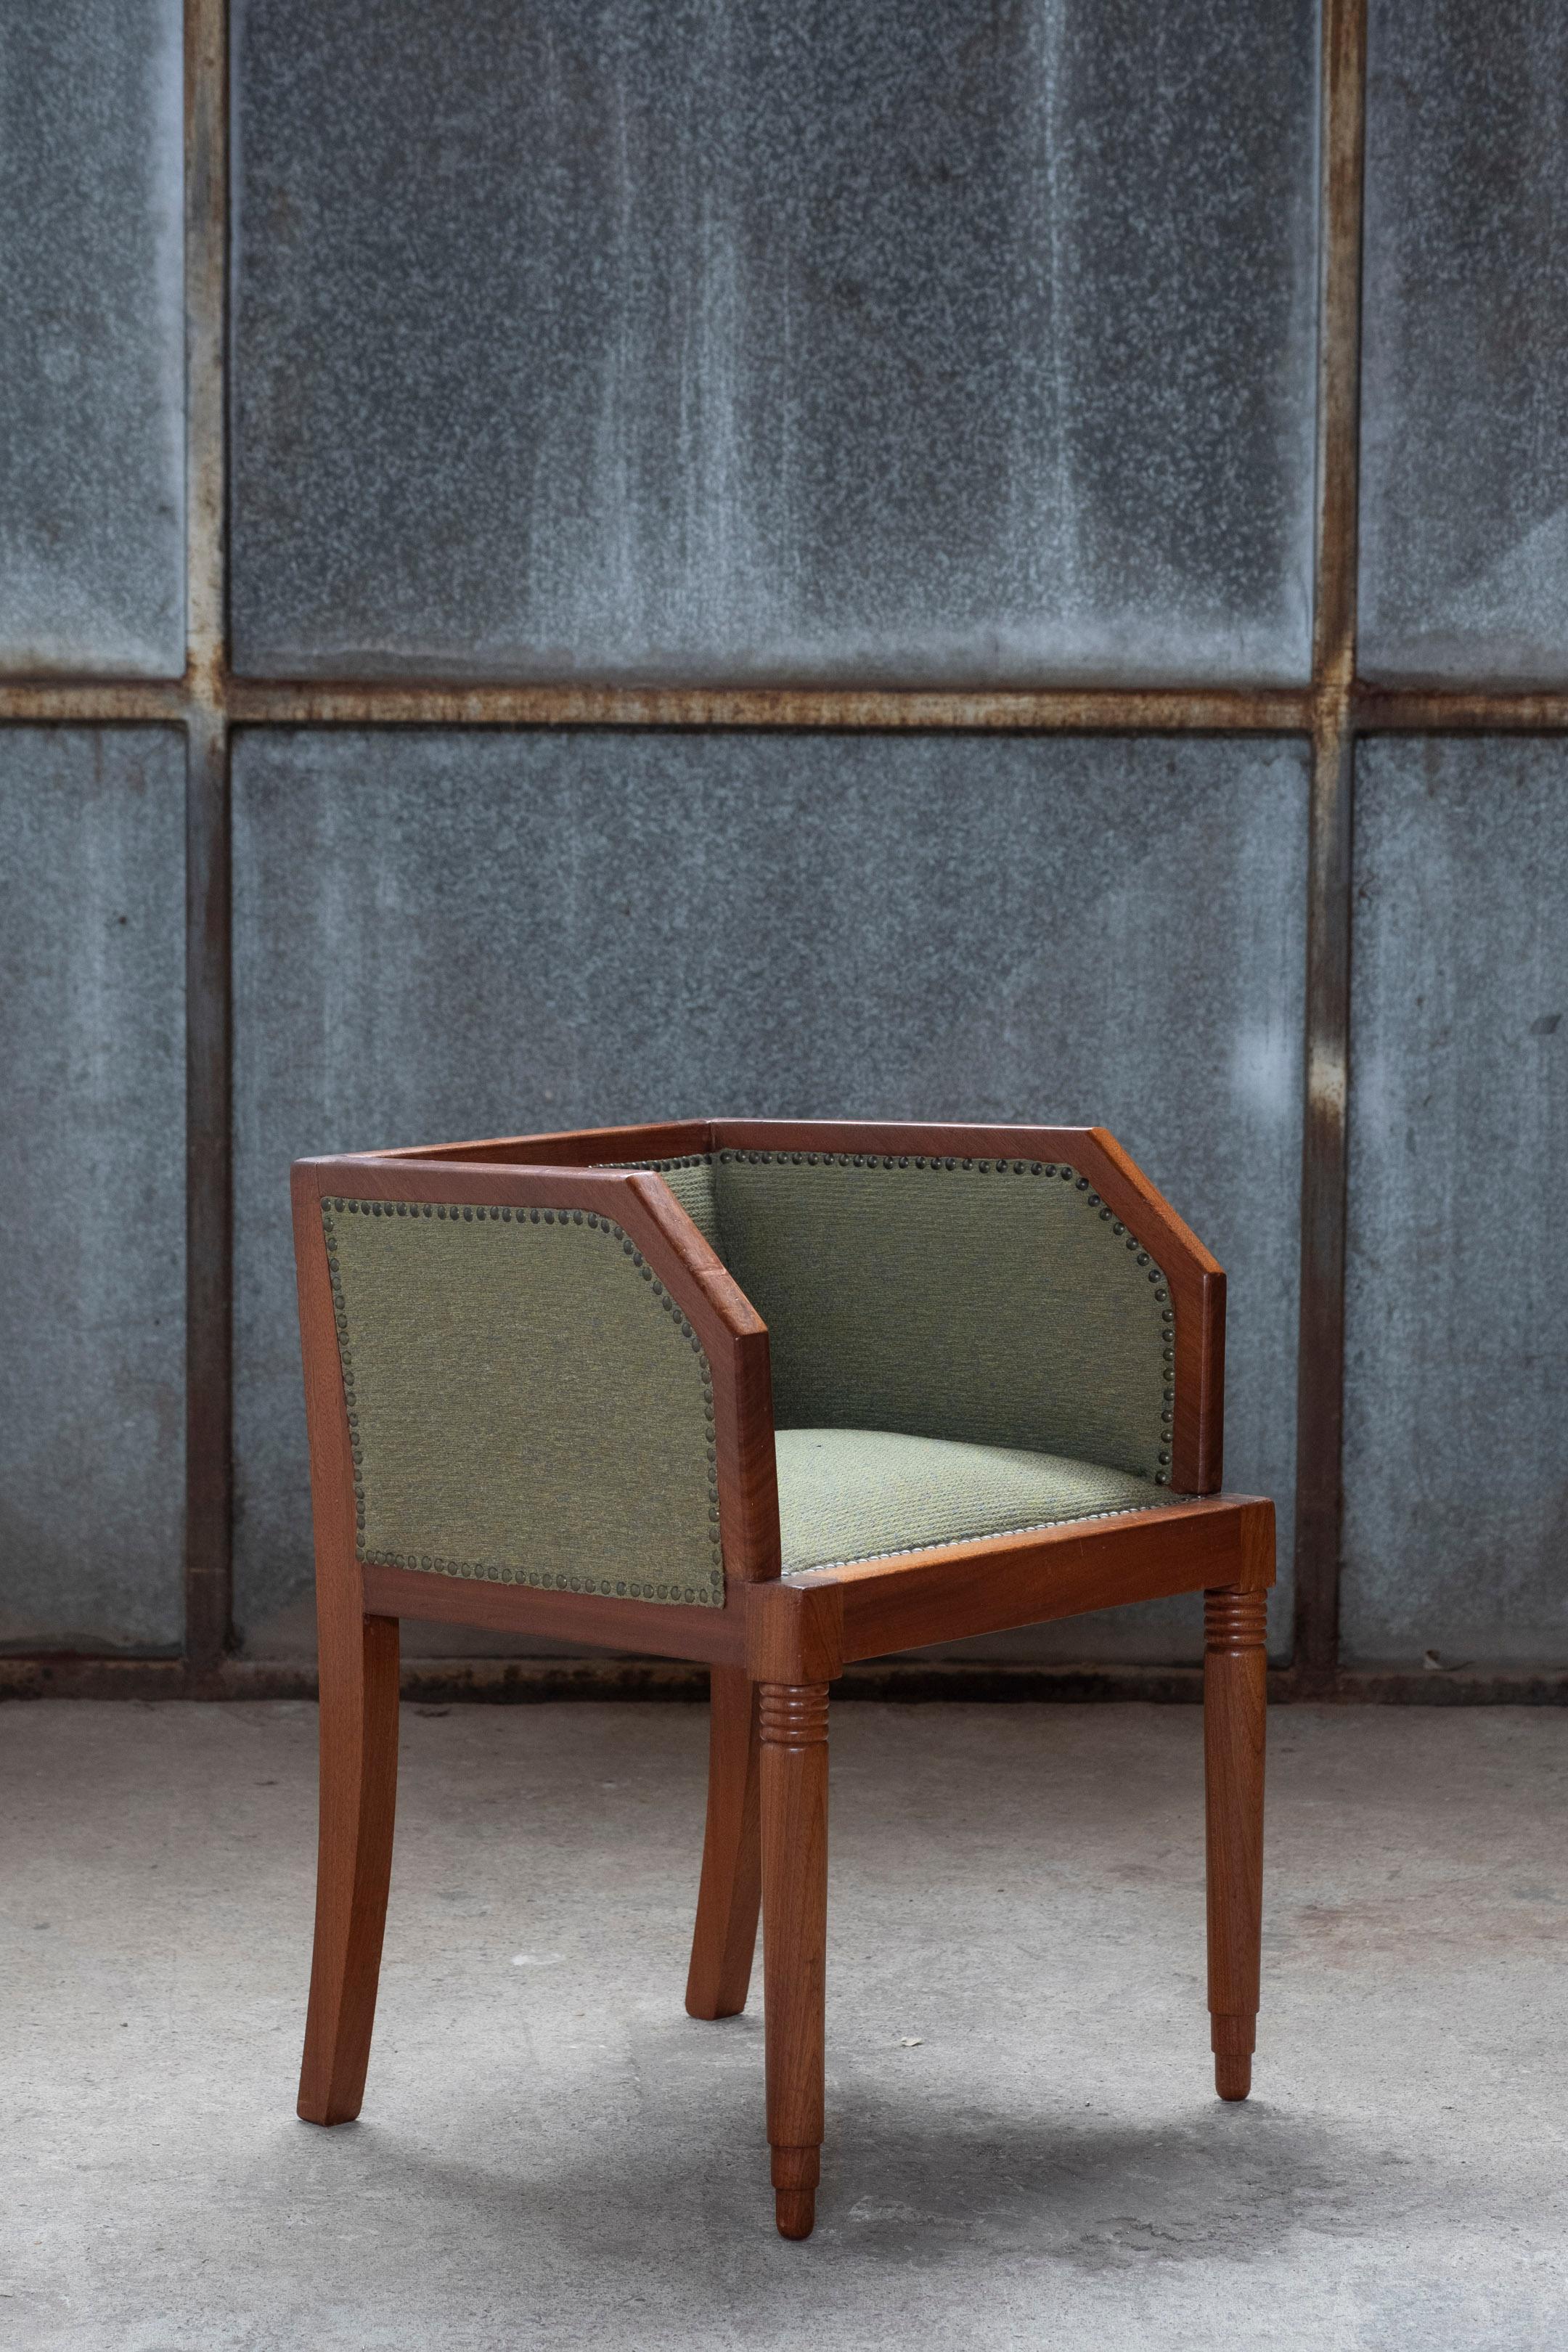 Belgischer Art-Déco-Stuhl aus den 1930er Jahren mit interessanten Abmessungen und Details wie den niedrigen Rücken- und Armlehnen, den gedrechselten Vorderbeinen und der wunderbaren Farbmischung des Textils. Das Design zeigt eine Spur von Kubismus.